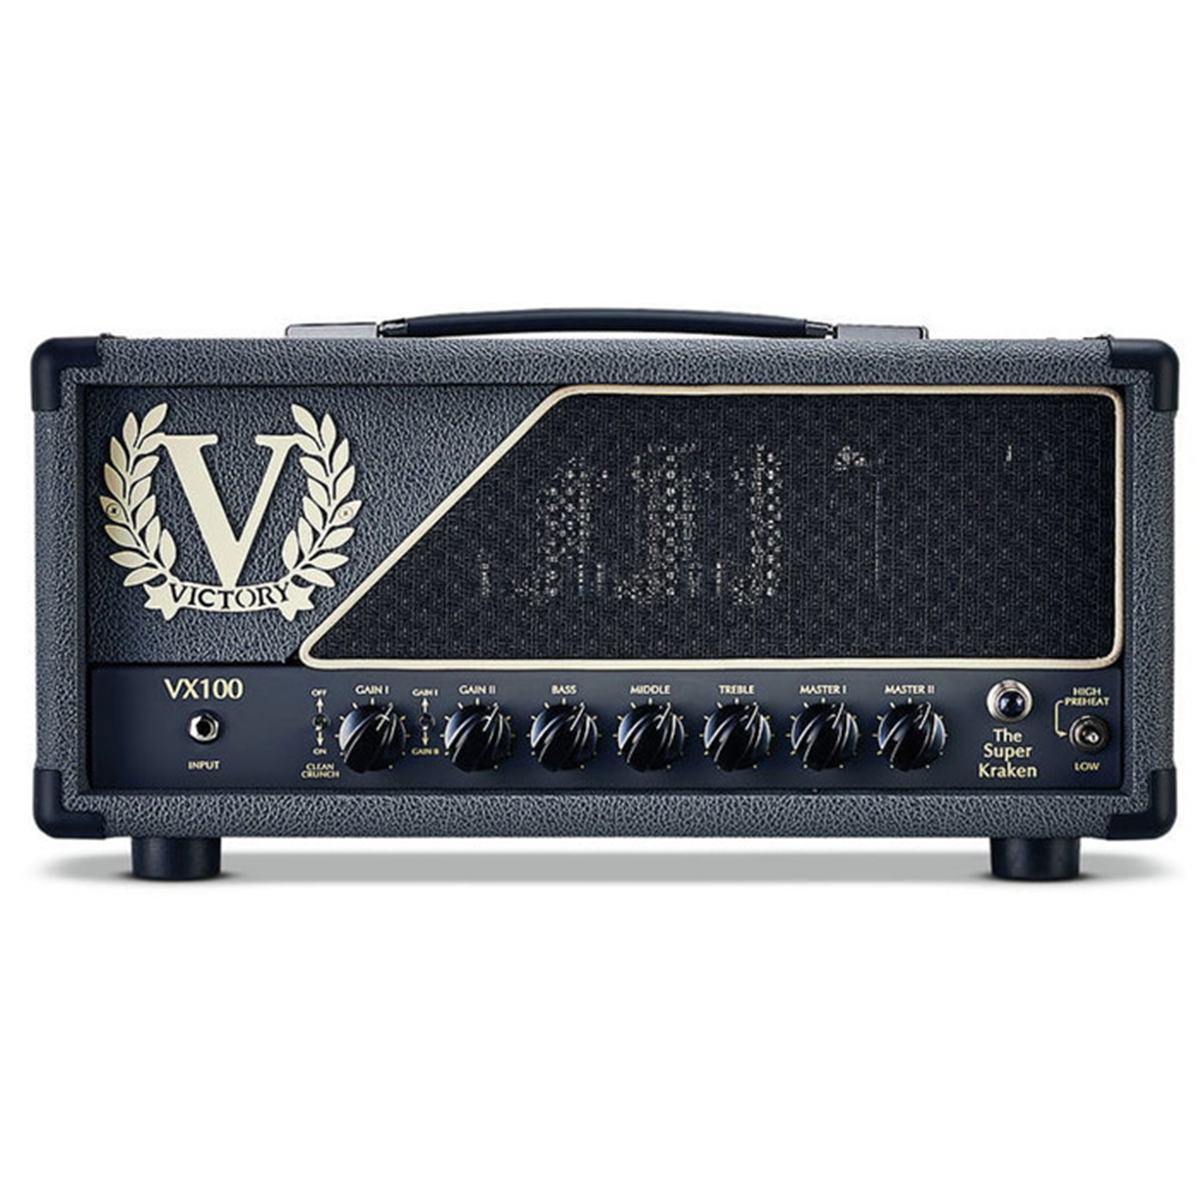 Victory Amps / VX100 The Super Kraken